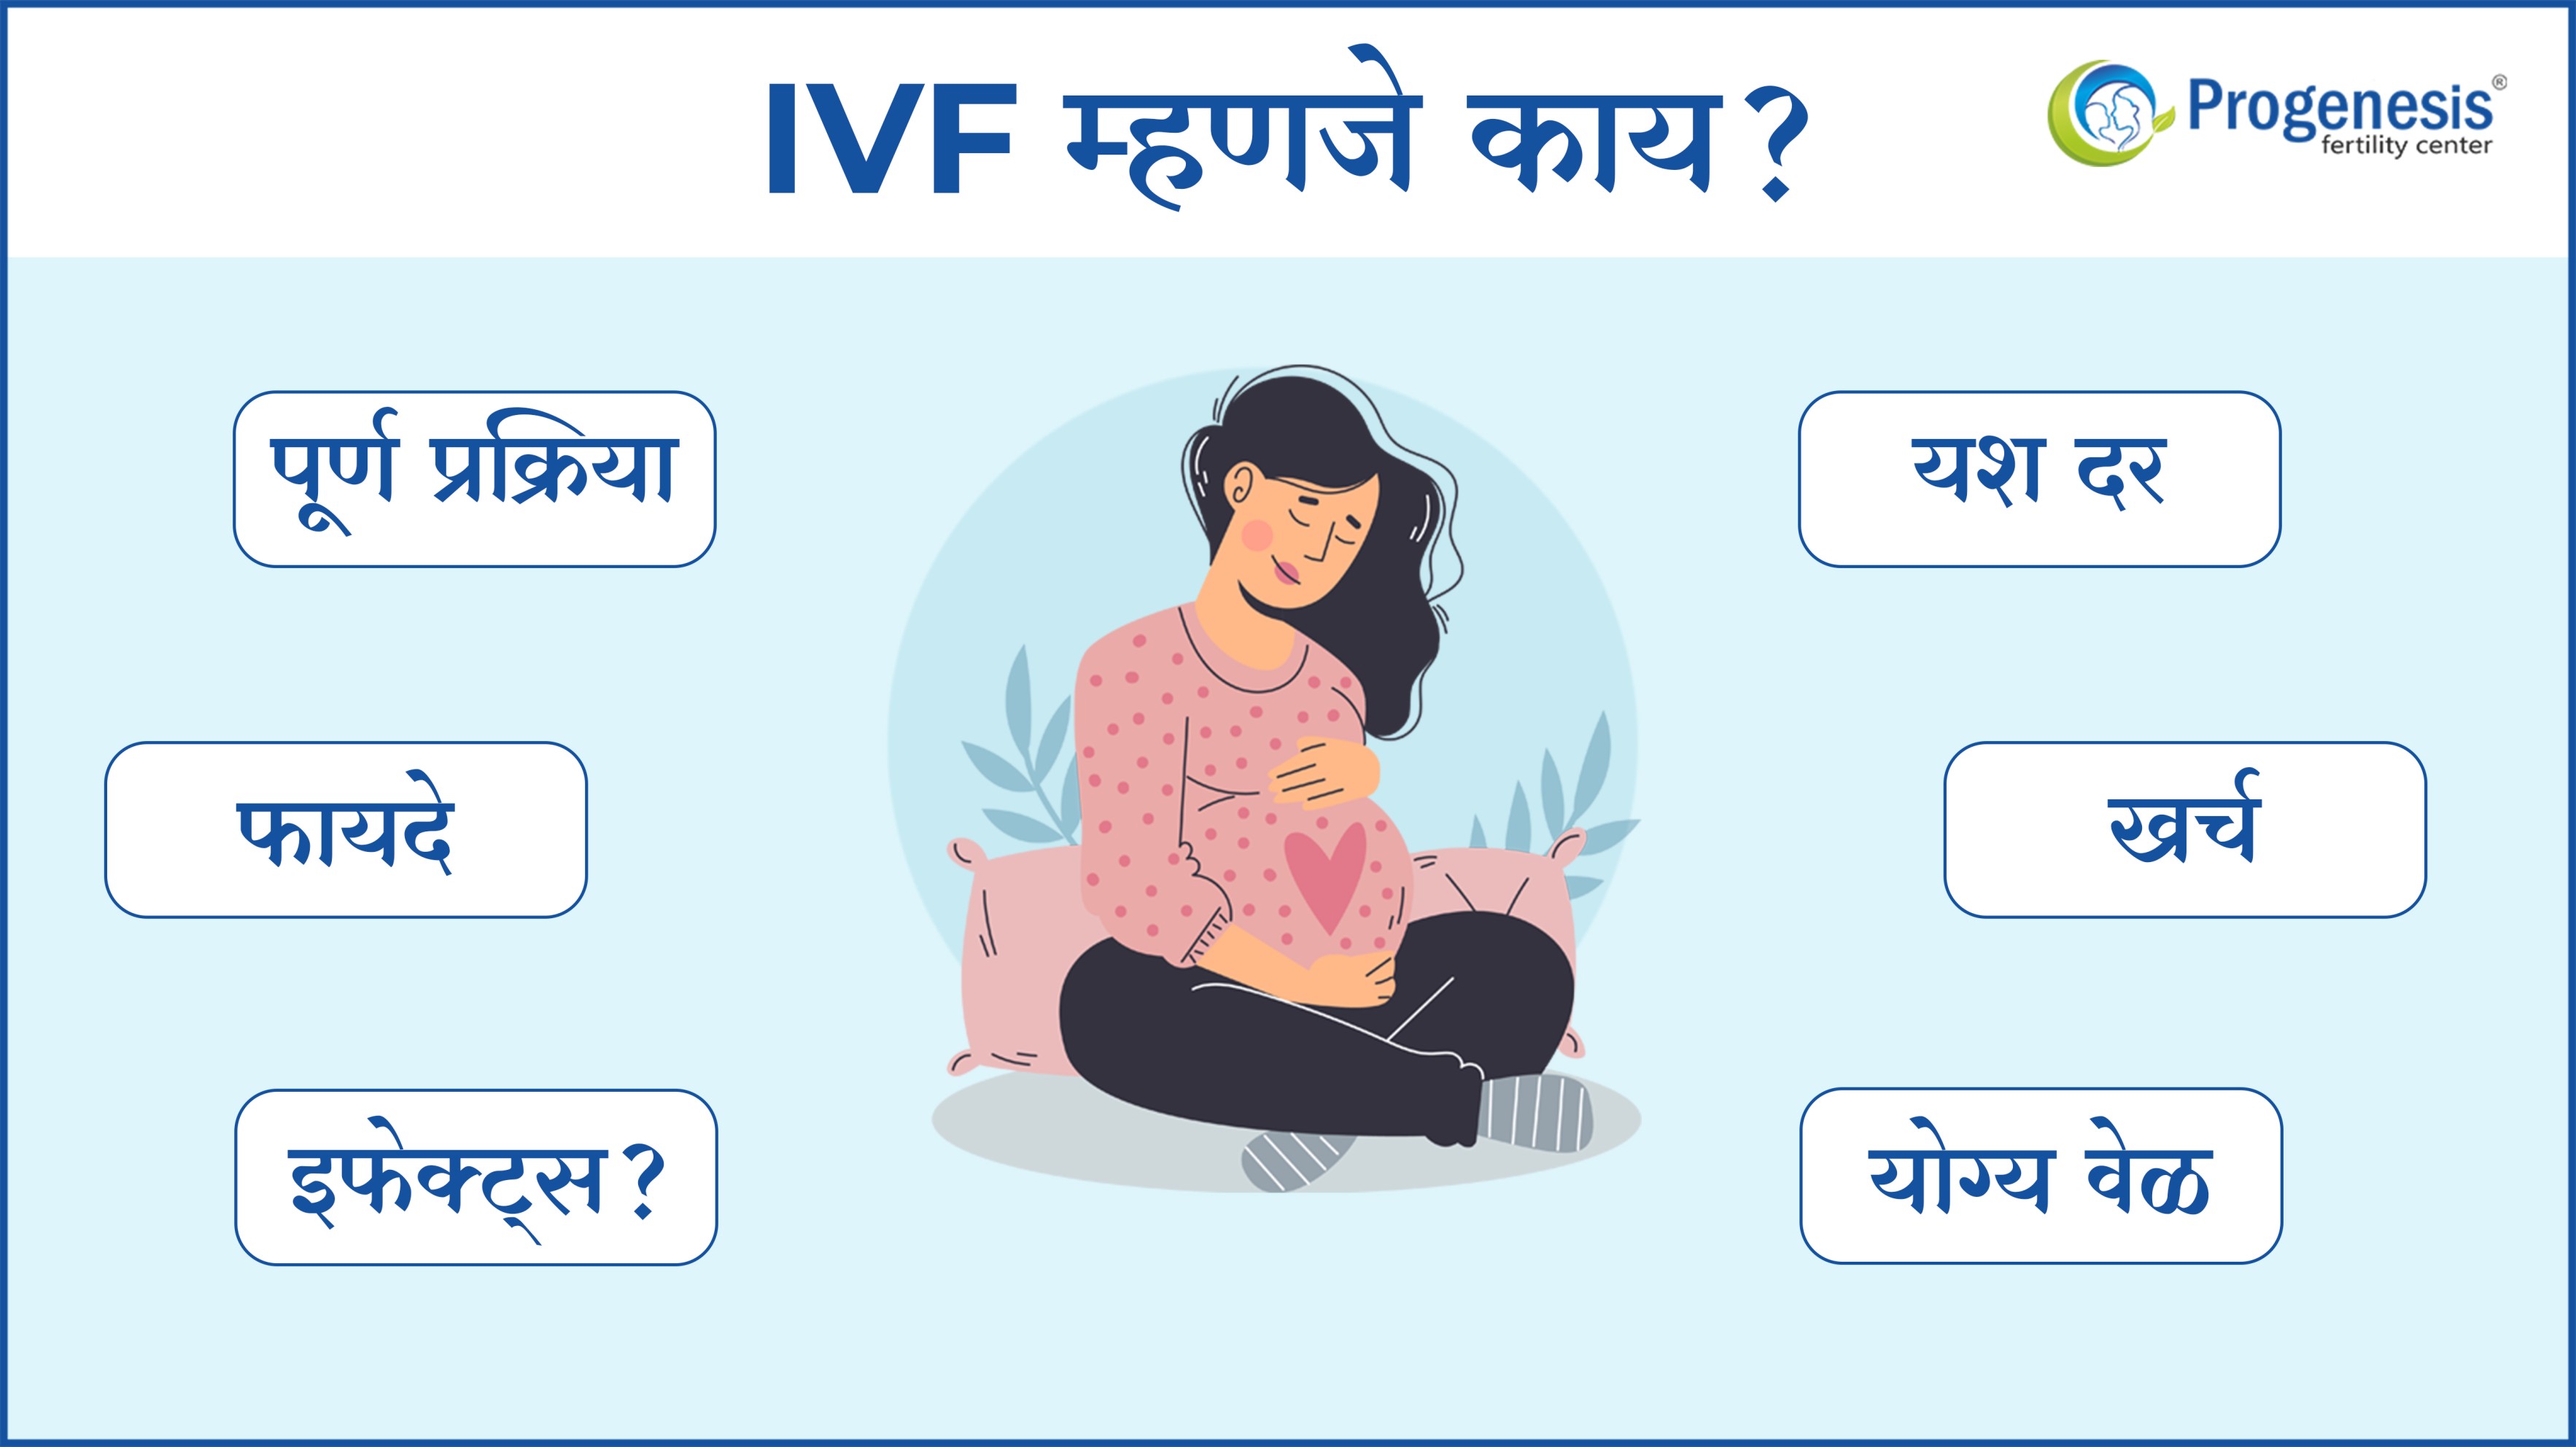 IVF म्हणजे काय? जाणून घ्या आयव्हीएफ ची पूर्ण प्रक्रिया, फायदे आणि यश दर